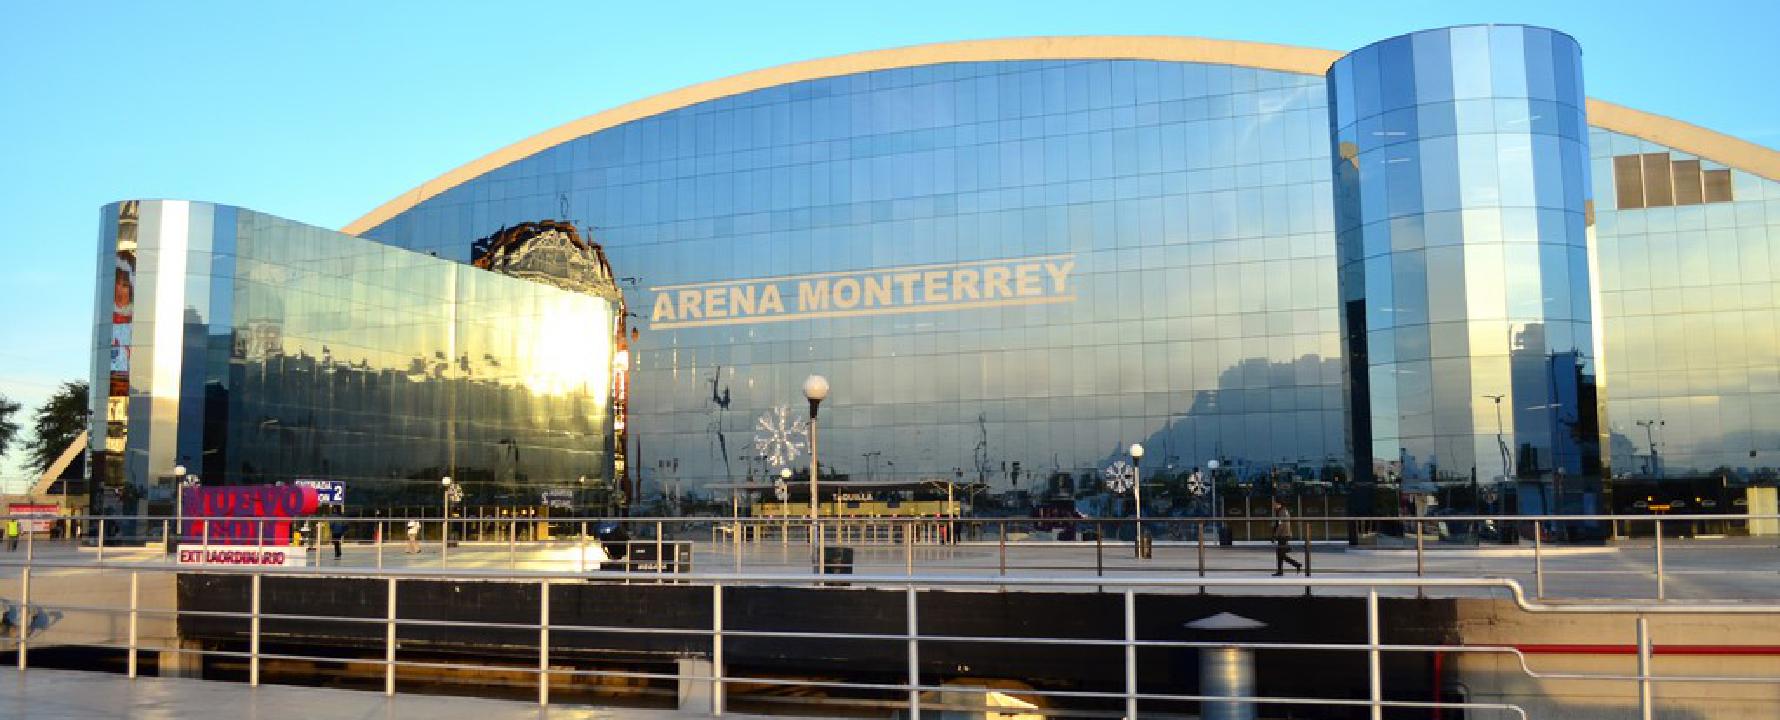 Fotografía promocional de Arena Monterrey